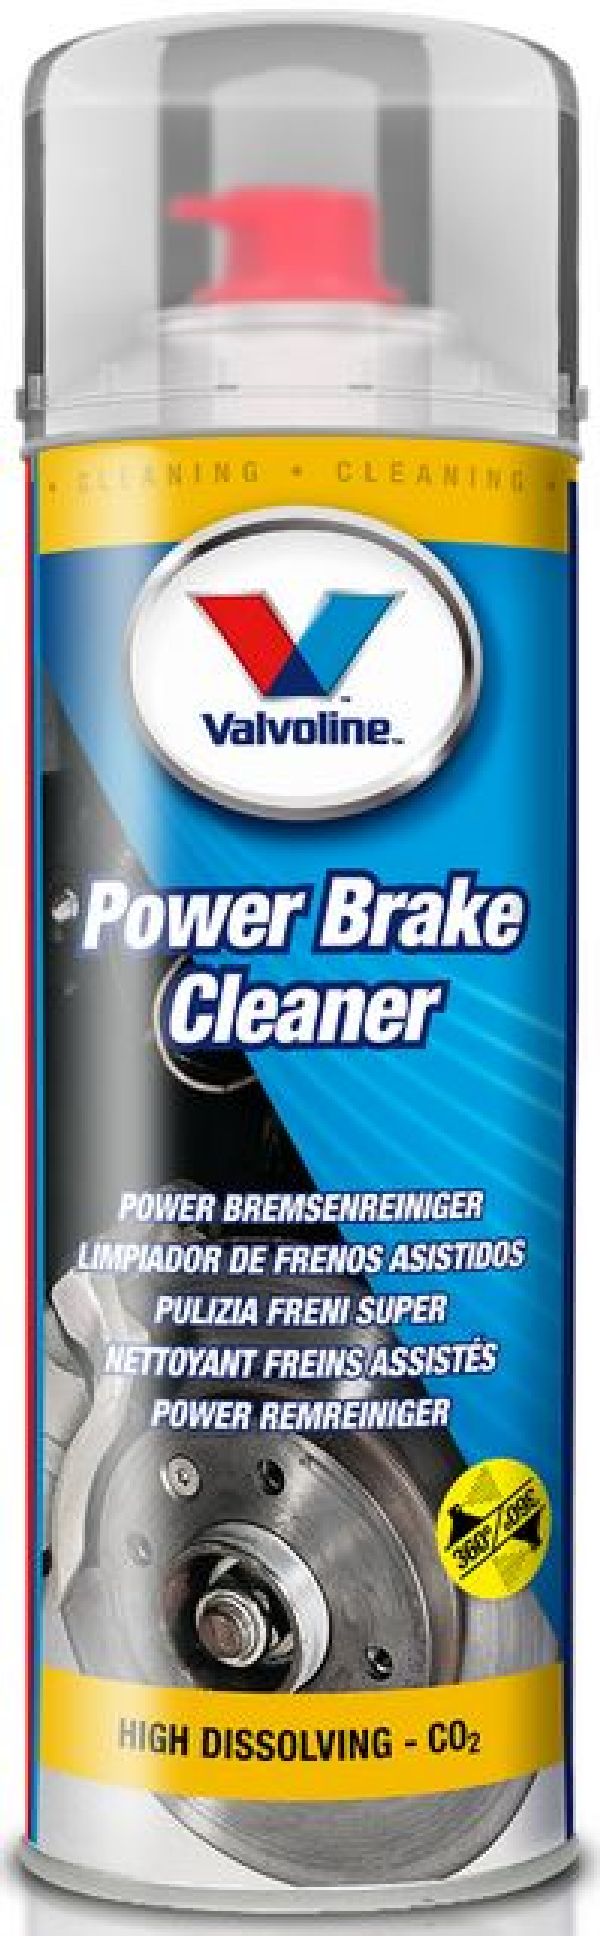 Valvoline Power Brake Cleaner